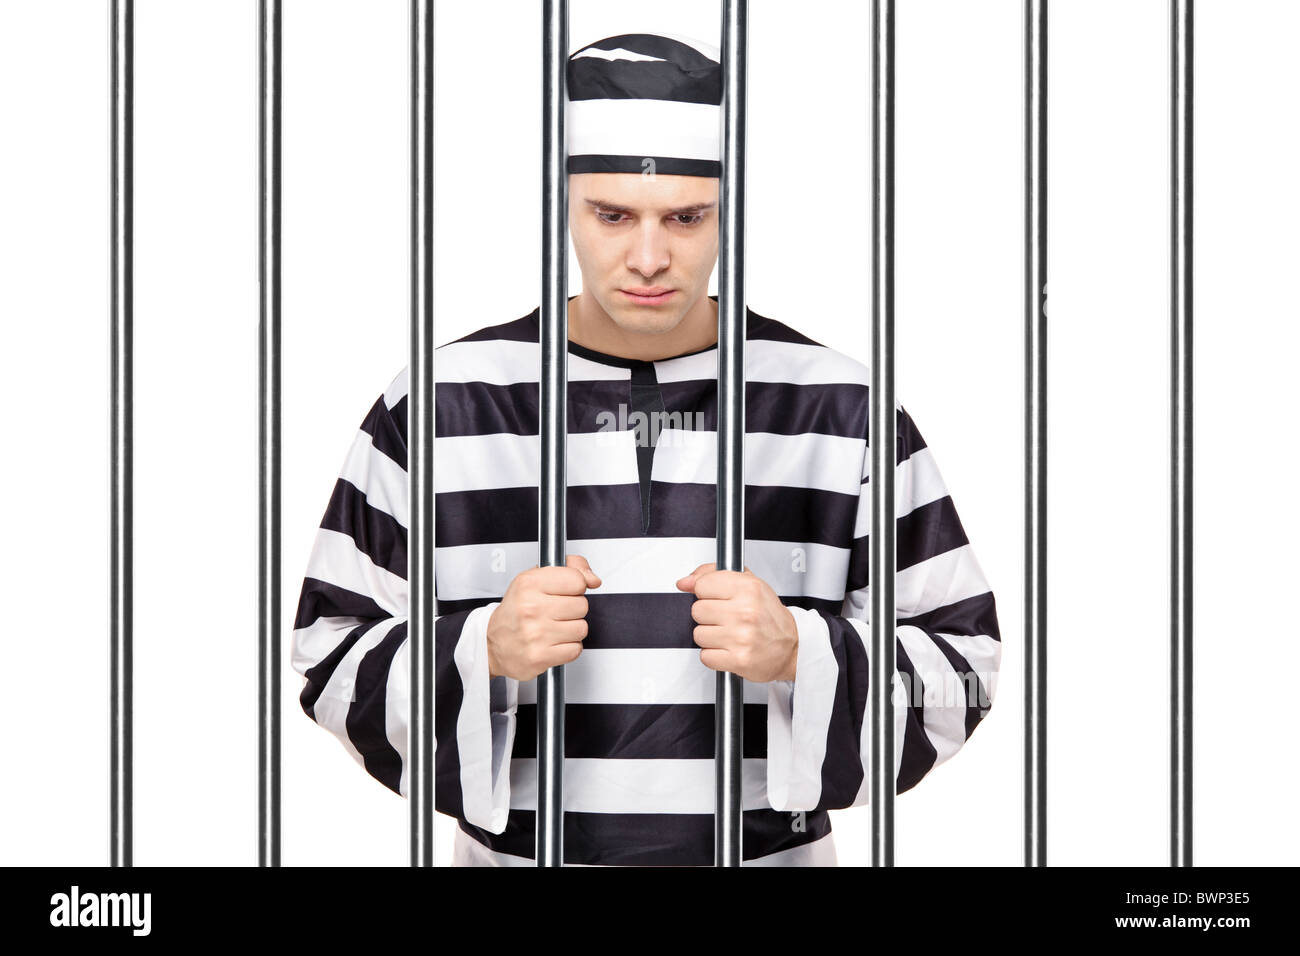 Prisoner перевод. Заключенный за решеткой. Тюремная одежда в полоску. Полосатая одежда заключенных. Человек в тюремной робе.